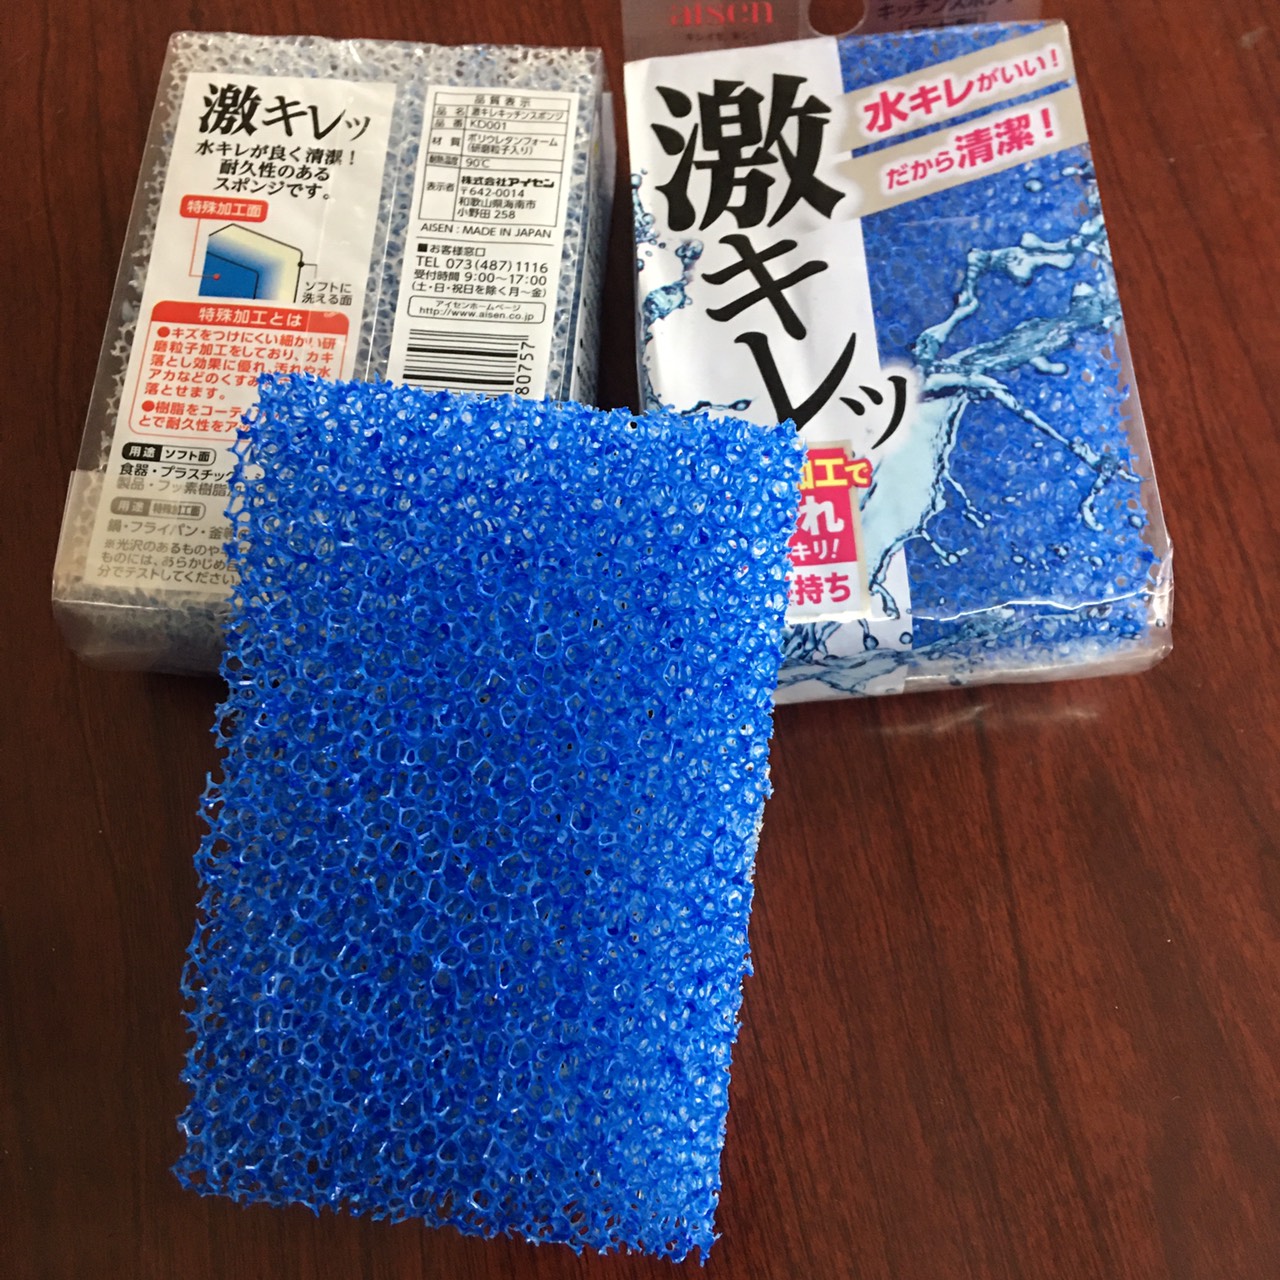 Mút rửa chén Siêu bền 2 mặt Aisen của Nhật Bản KD001 hàng nhập khẩu từ Nhật